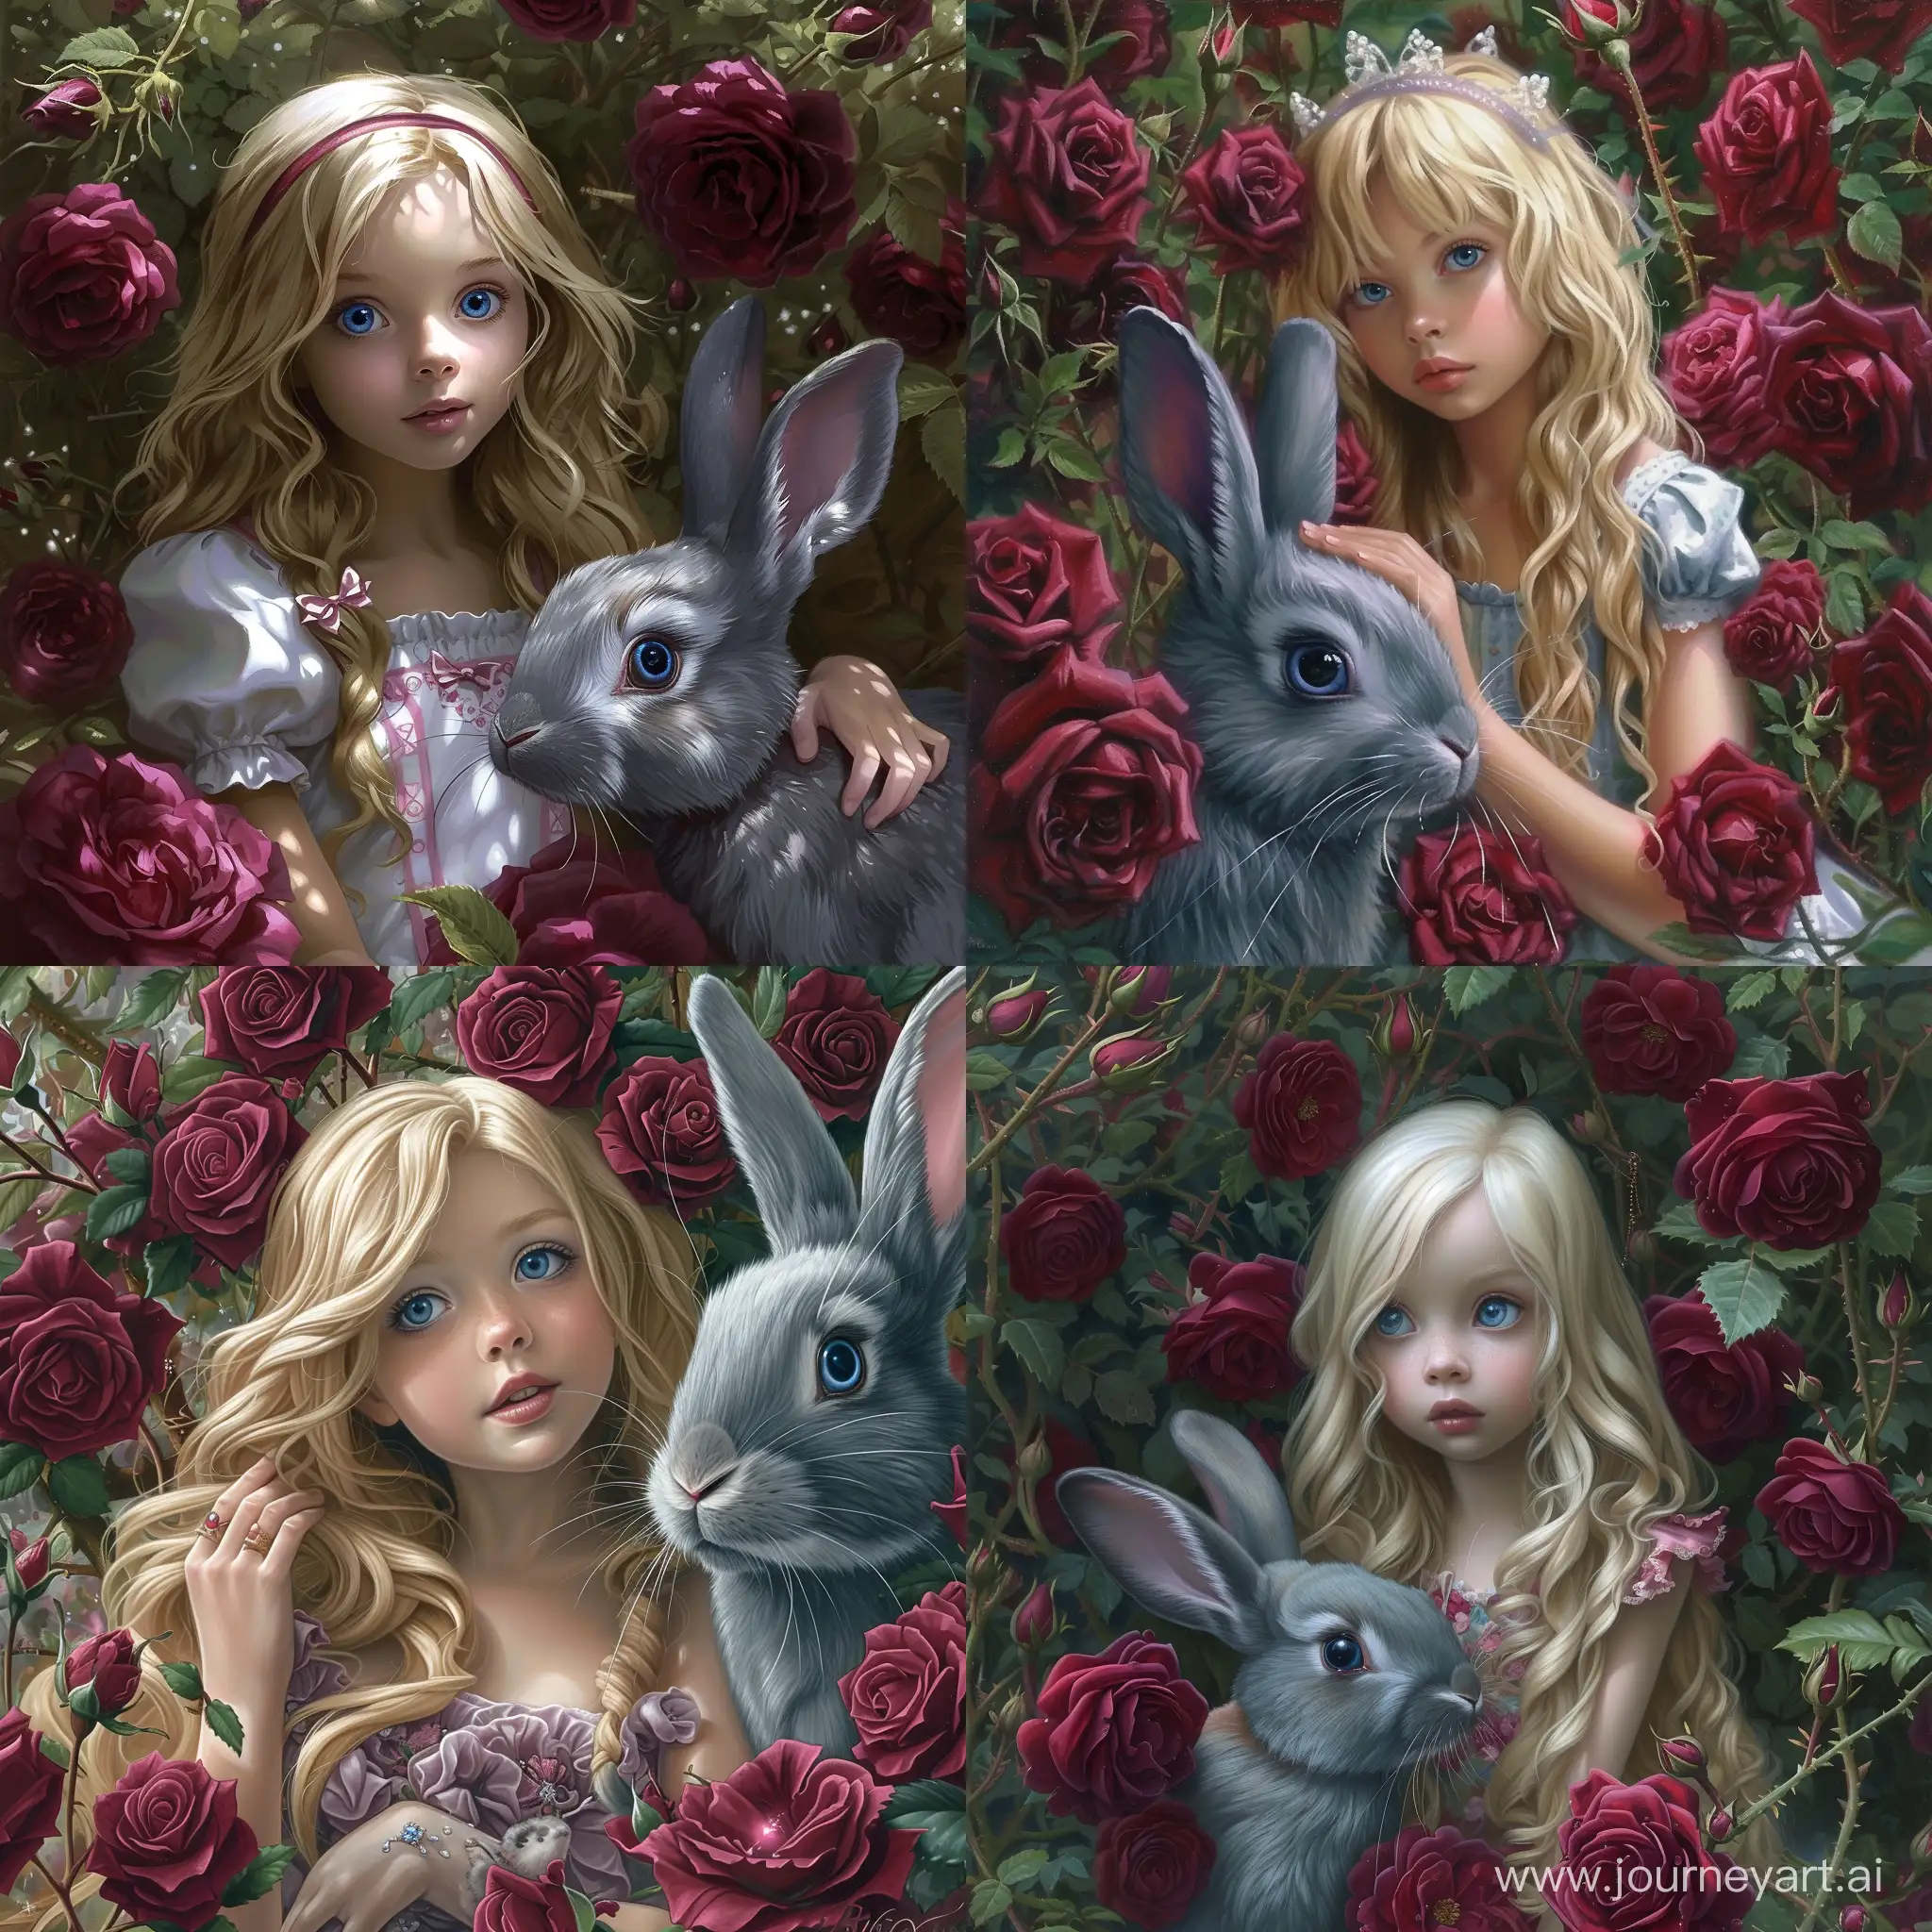 Алиса , милая девочка, блондинка, с голубыми глазами из сказки Алиса в стране чудес, рядом бордовые розы, серый кролик